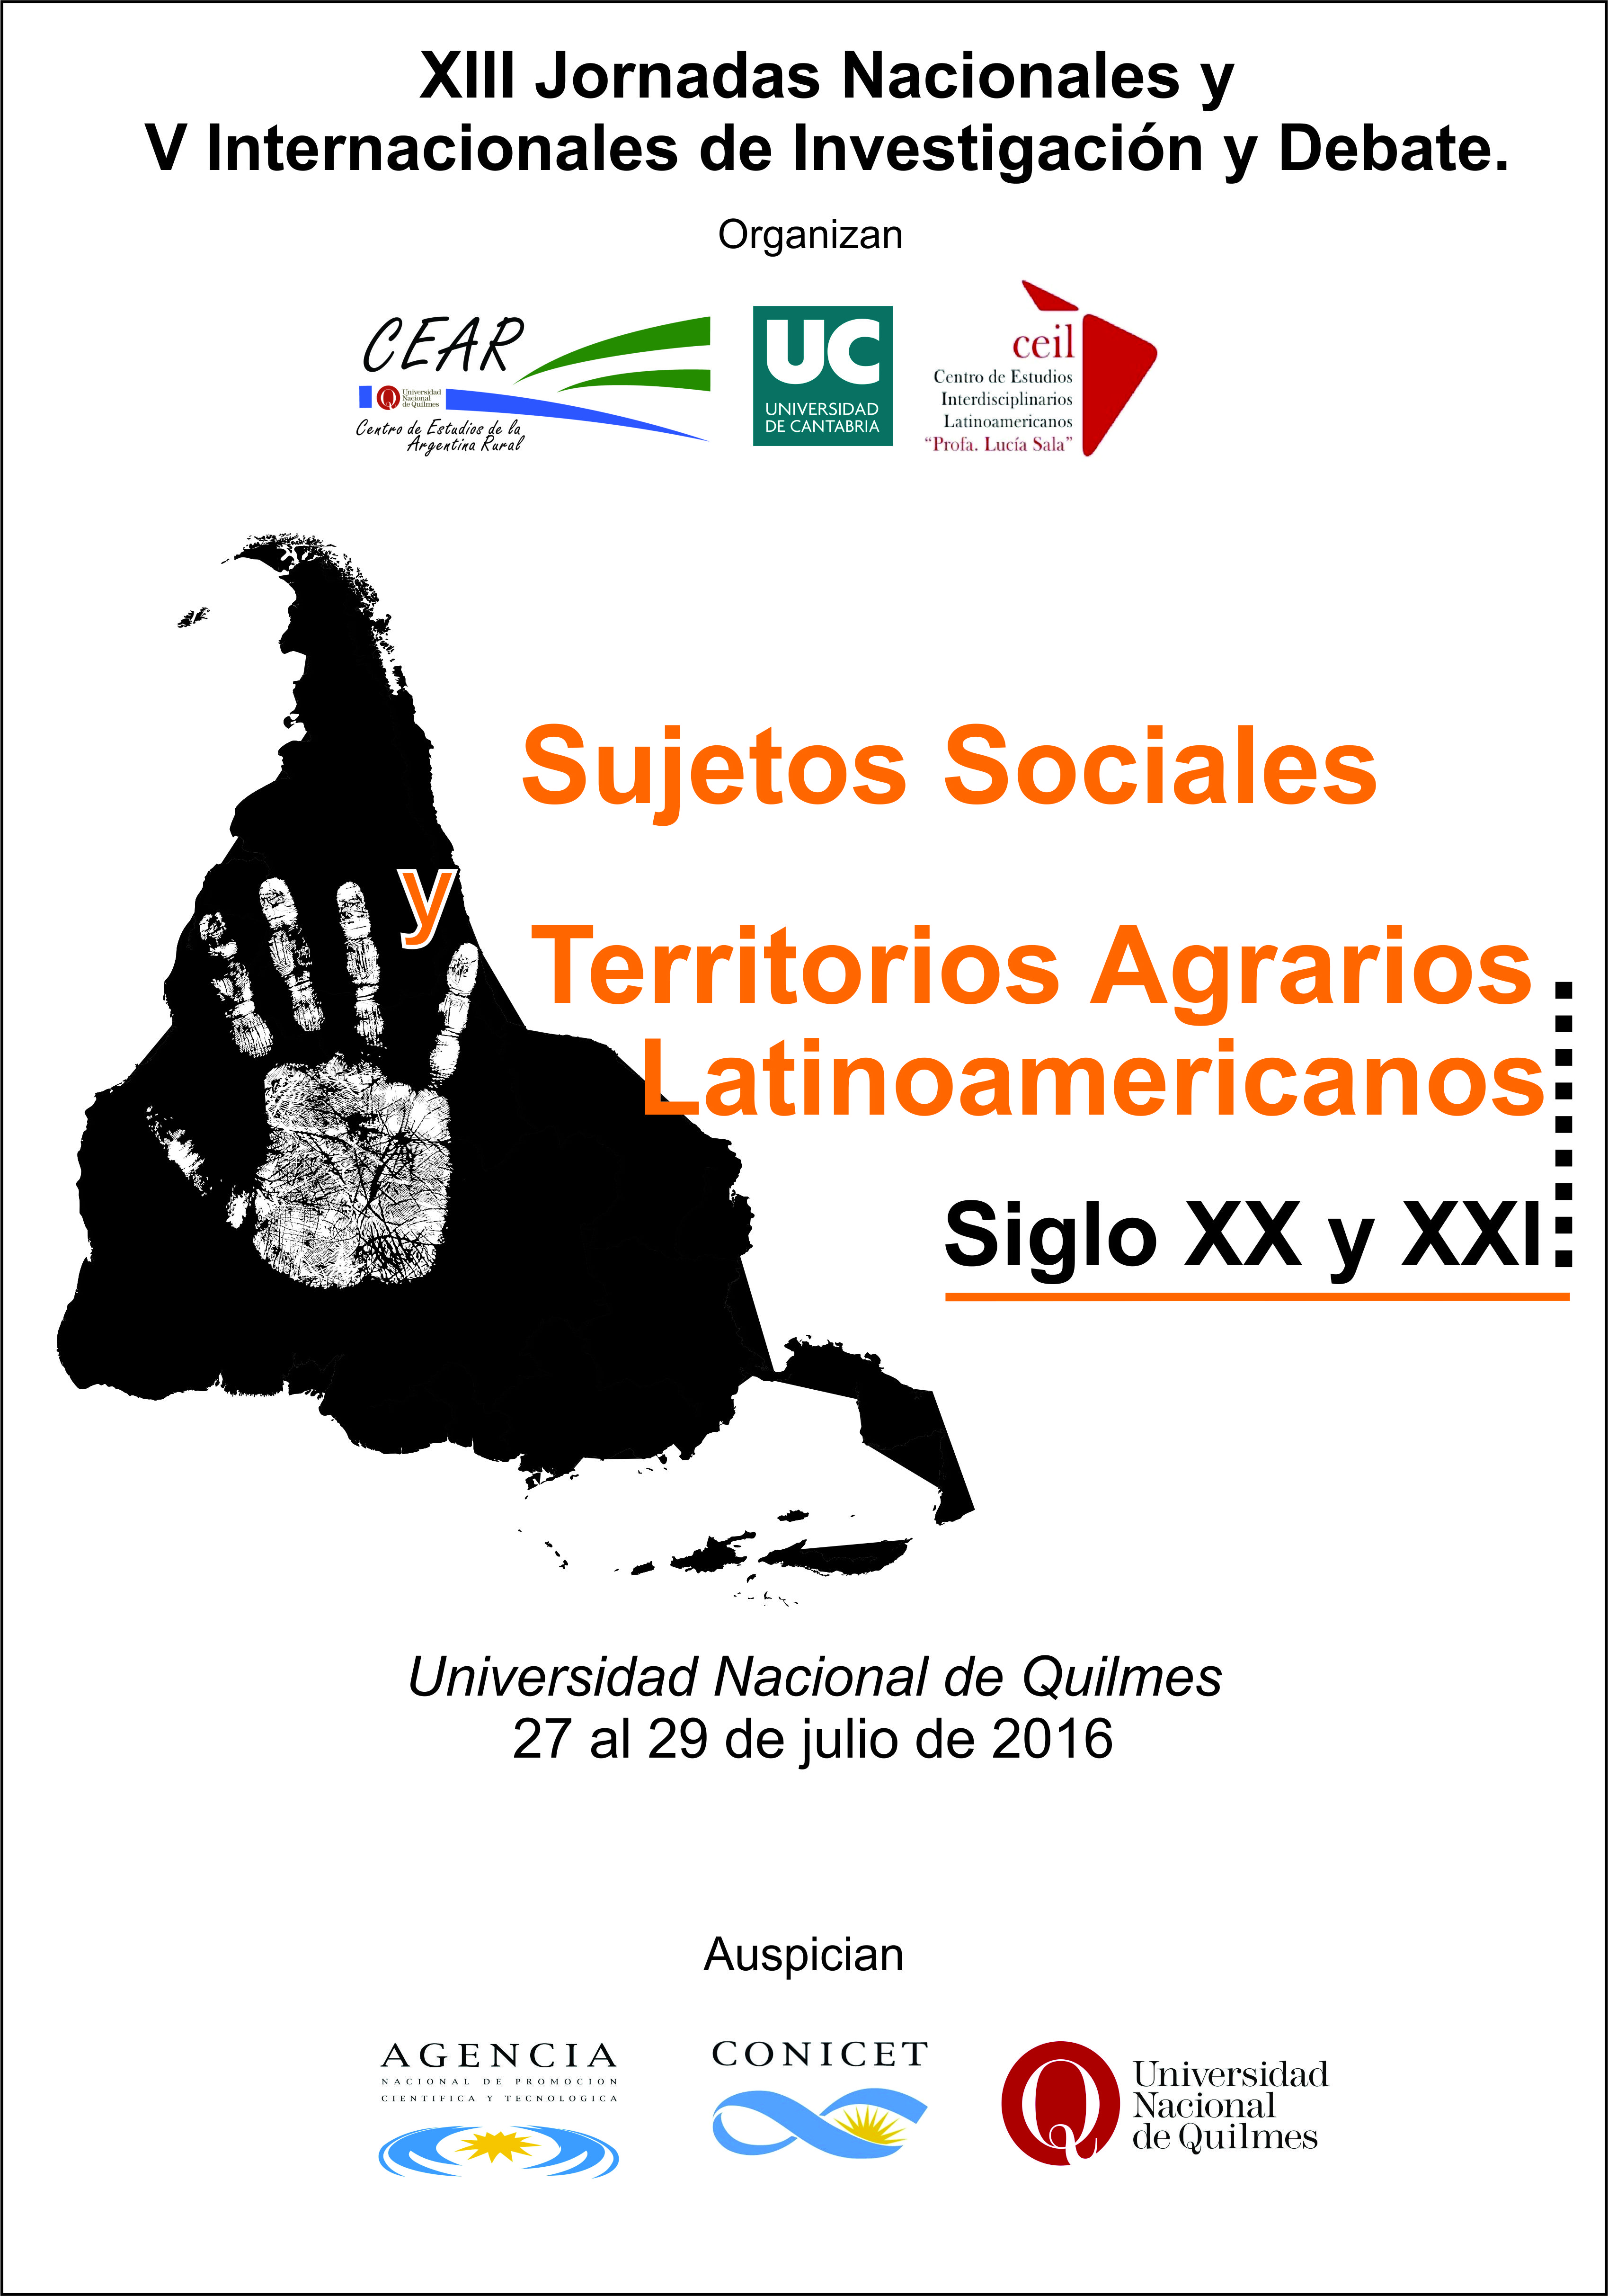 XIII Jornadas Nacionales y V Internacionales de Investigación y Debate “Sujetos Sociales y Territorios Agrarios Latinoamericanos. Siglos XX y XXI”